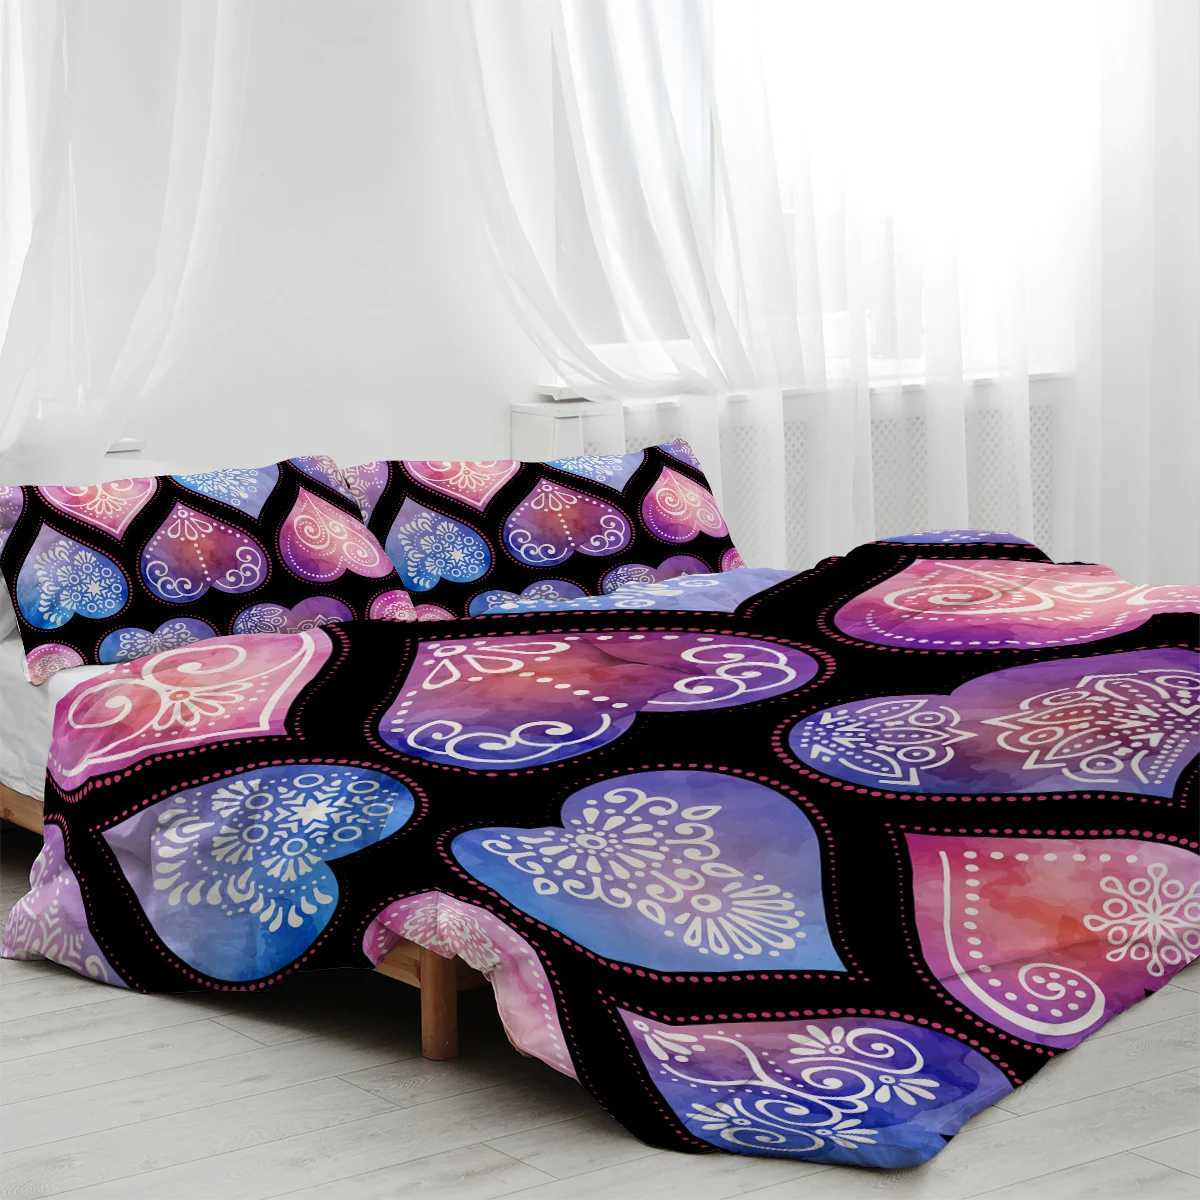 Bettwäsche-Sets herzgeformte Mandala-Design-Bettwäsche-Dekoration 3-teiliger Set von Down-Bettbezügen mit 2 Kissen Shams, die für Familienbetten verwendet werden J240507